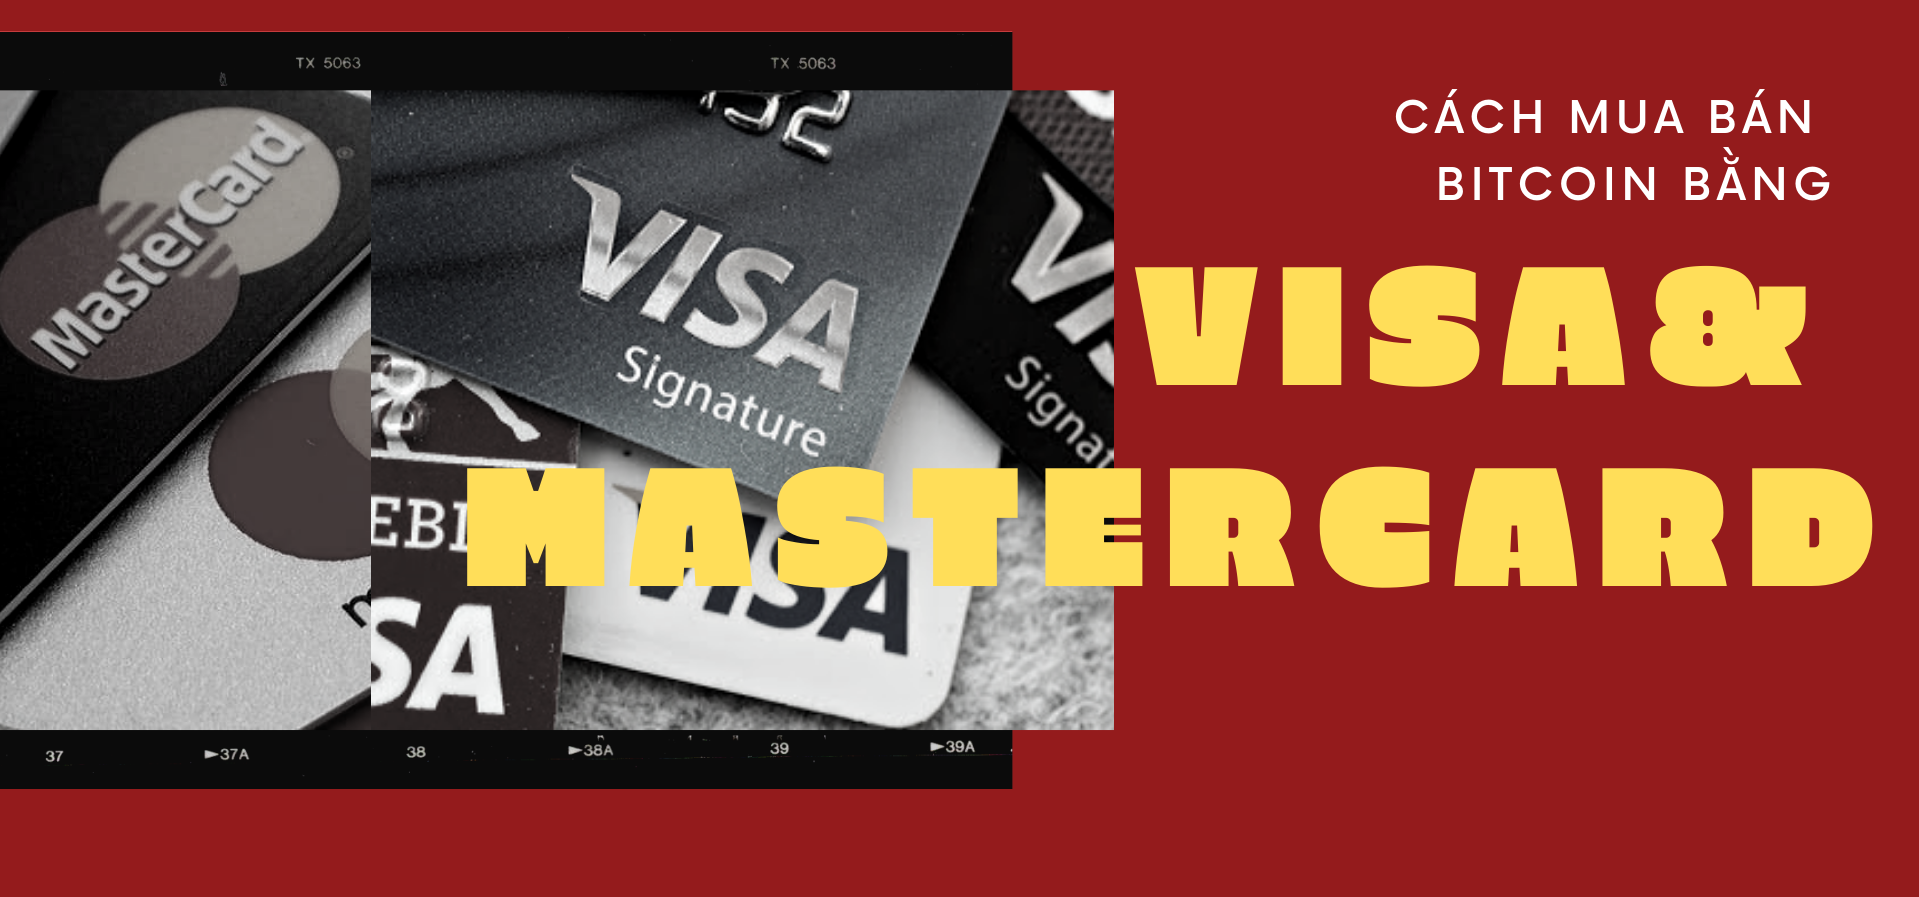 Mua Bitcoin bằng thẻ VISA / Mastercard trên sàn KuCoin